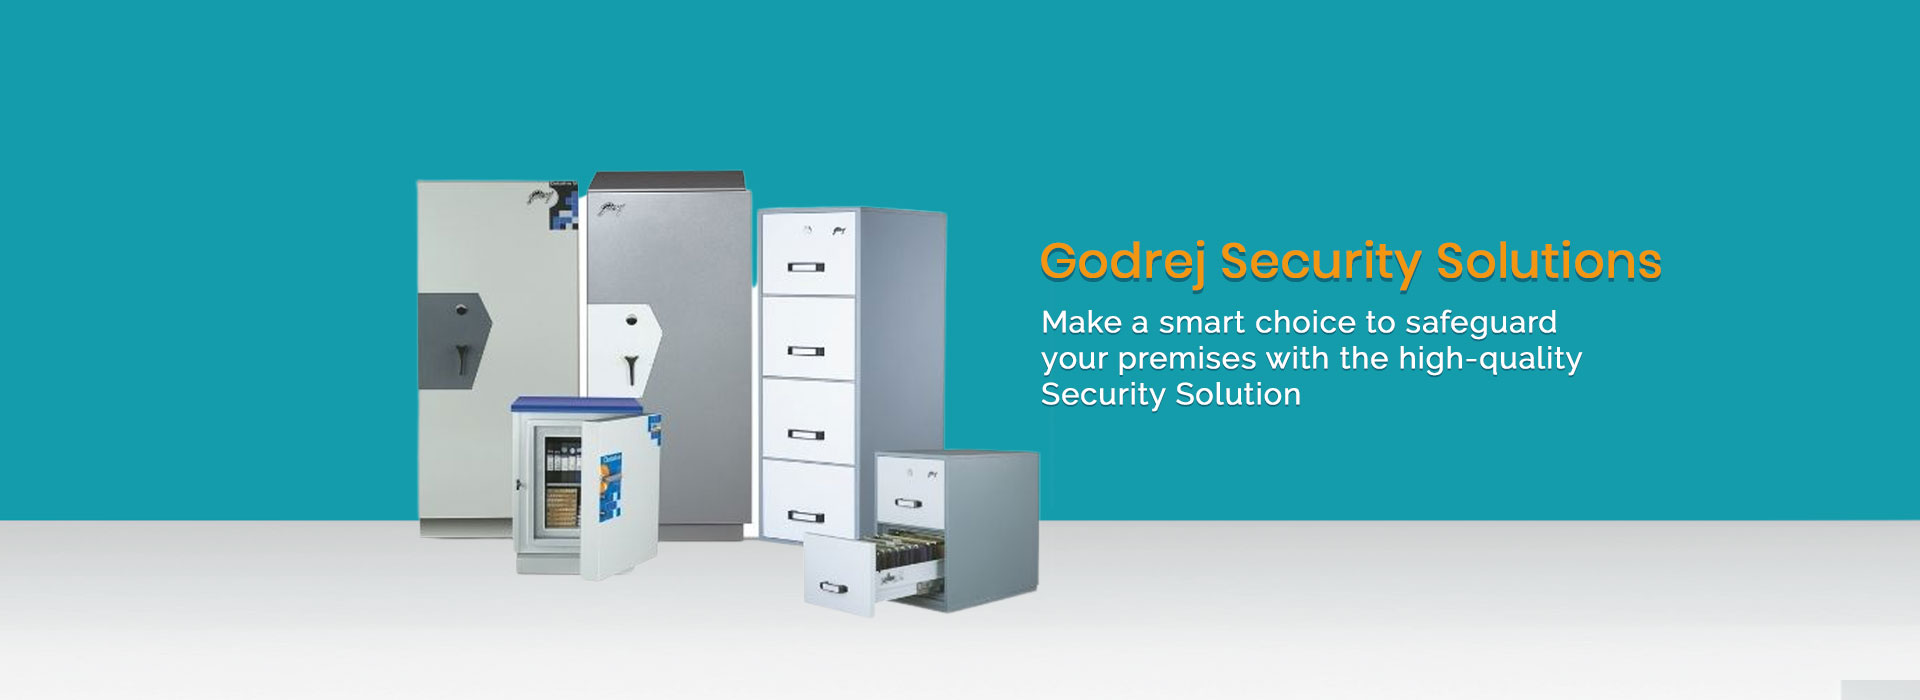 Godrej Security Solutions in Nauroji Nagar